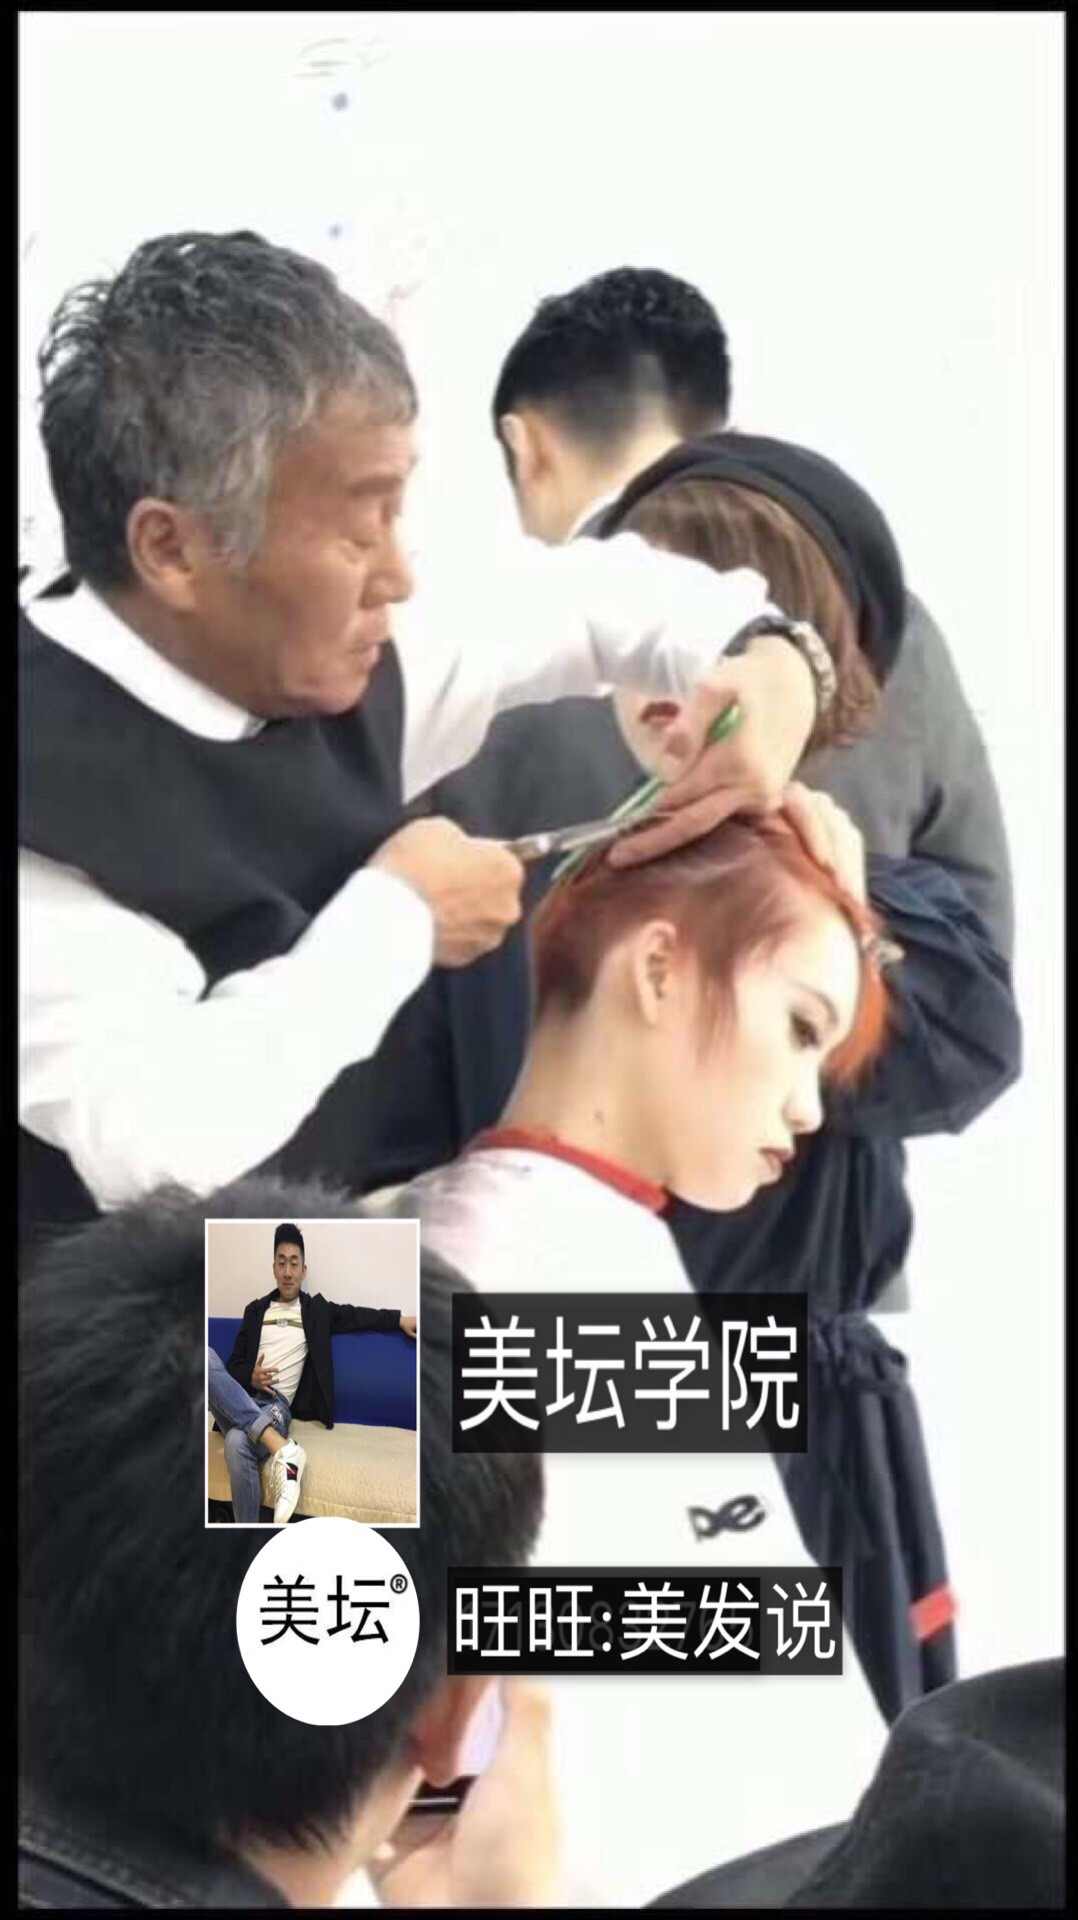 peek-a-boo川岛文夫团队日本游学大师班日式发型剪发美发视频教程